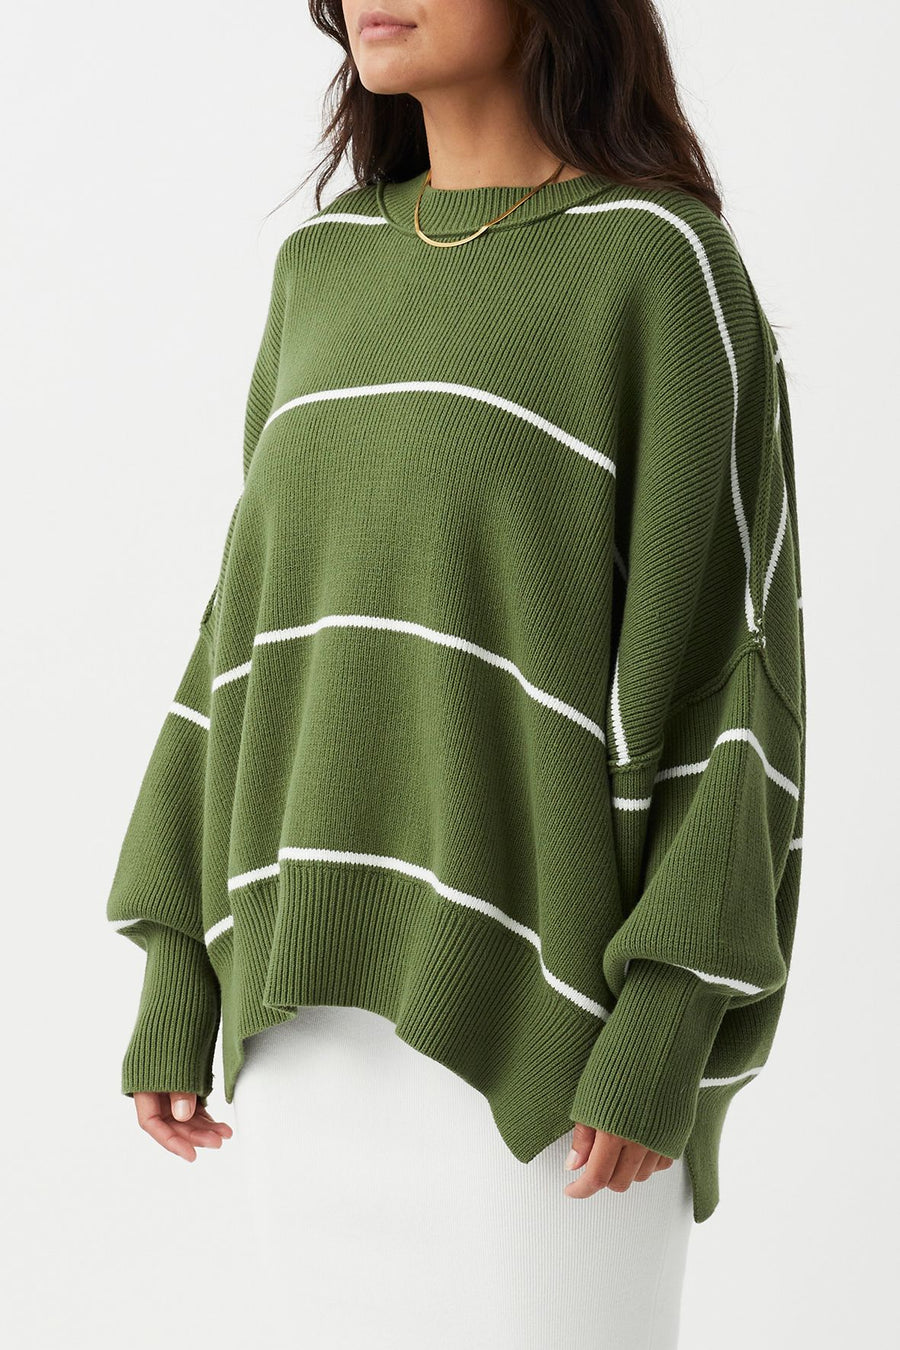 Harper Stripe Organic Knit Sweater- Caper & Cream